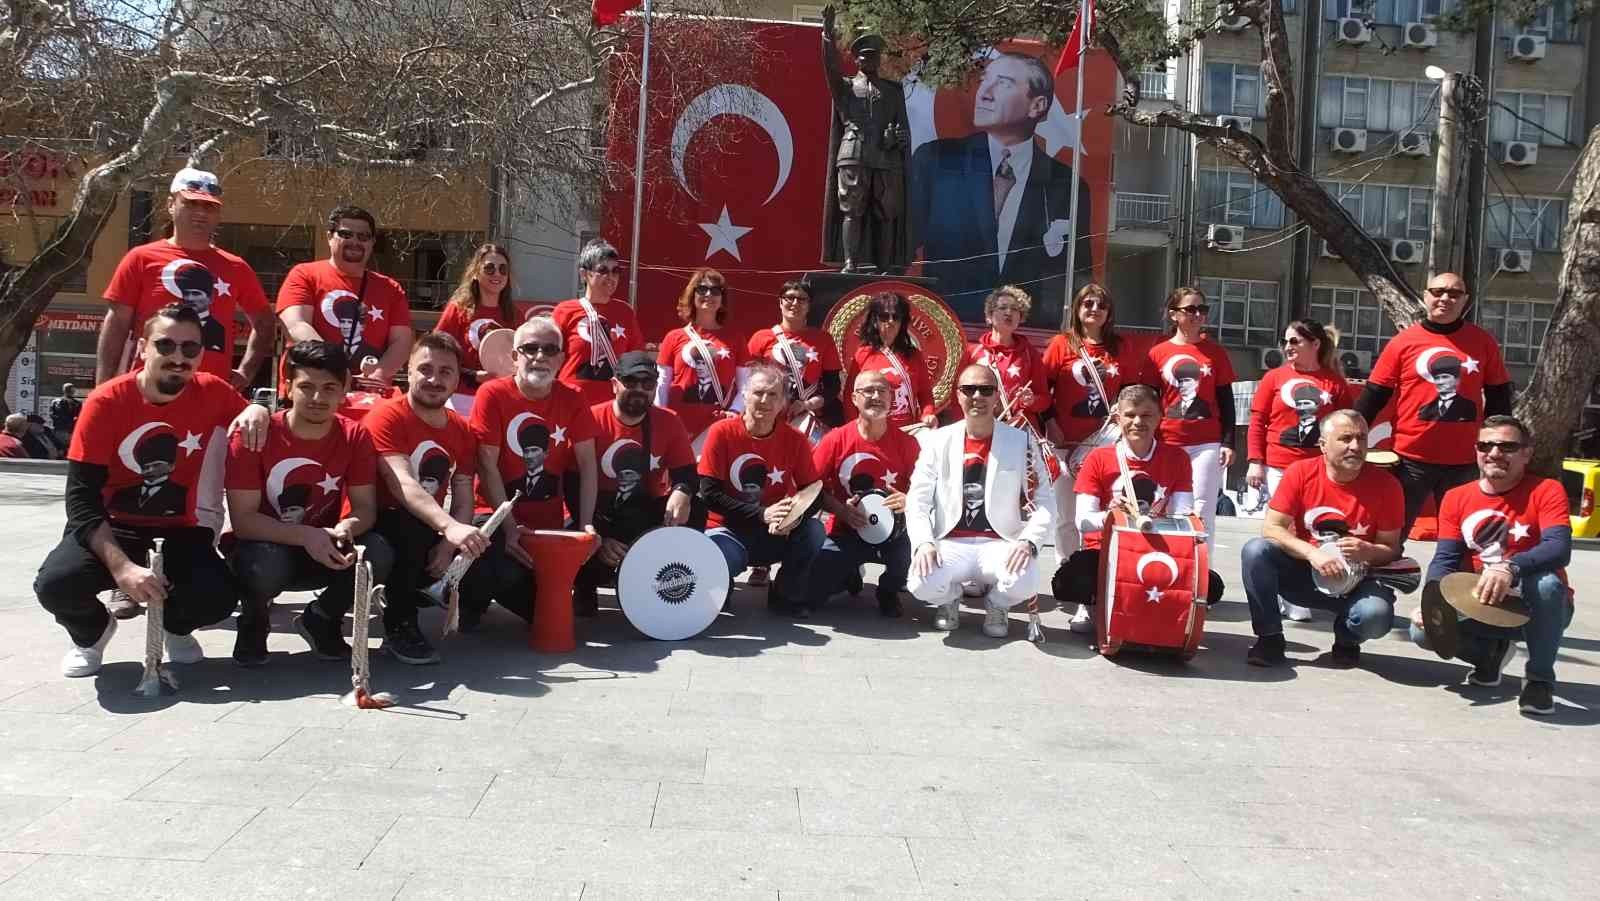 Balıkesir’in Burhaniye ilçesinde öğretmen, öğrenci ve velilerden oluşan bando takımı etkinliklerin aranılan ekibi oldu. 2018 yılında Mustafa ...